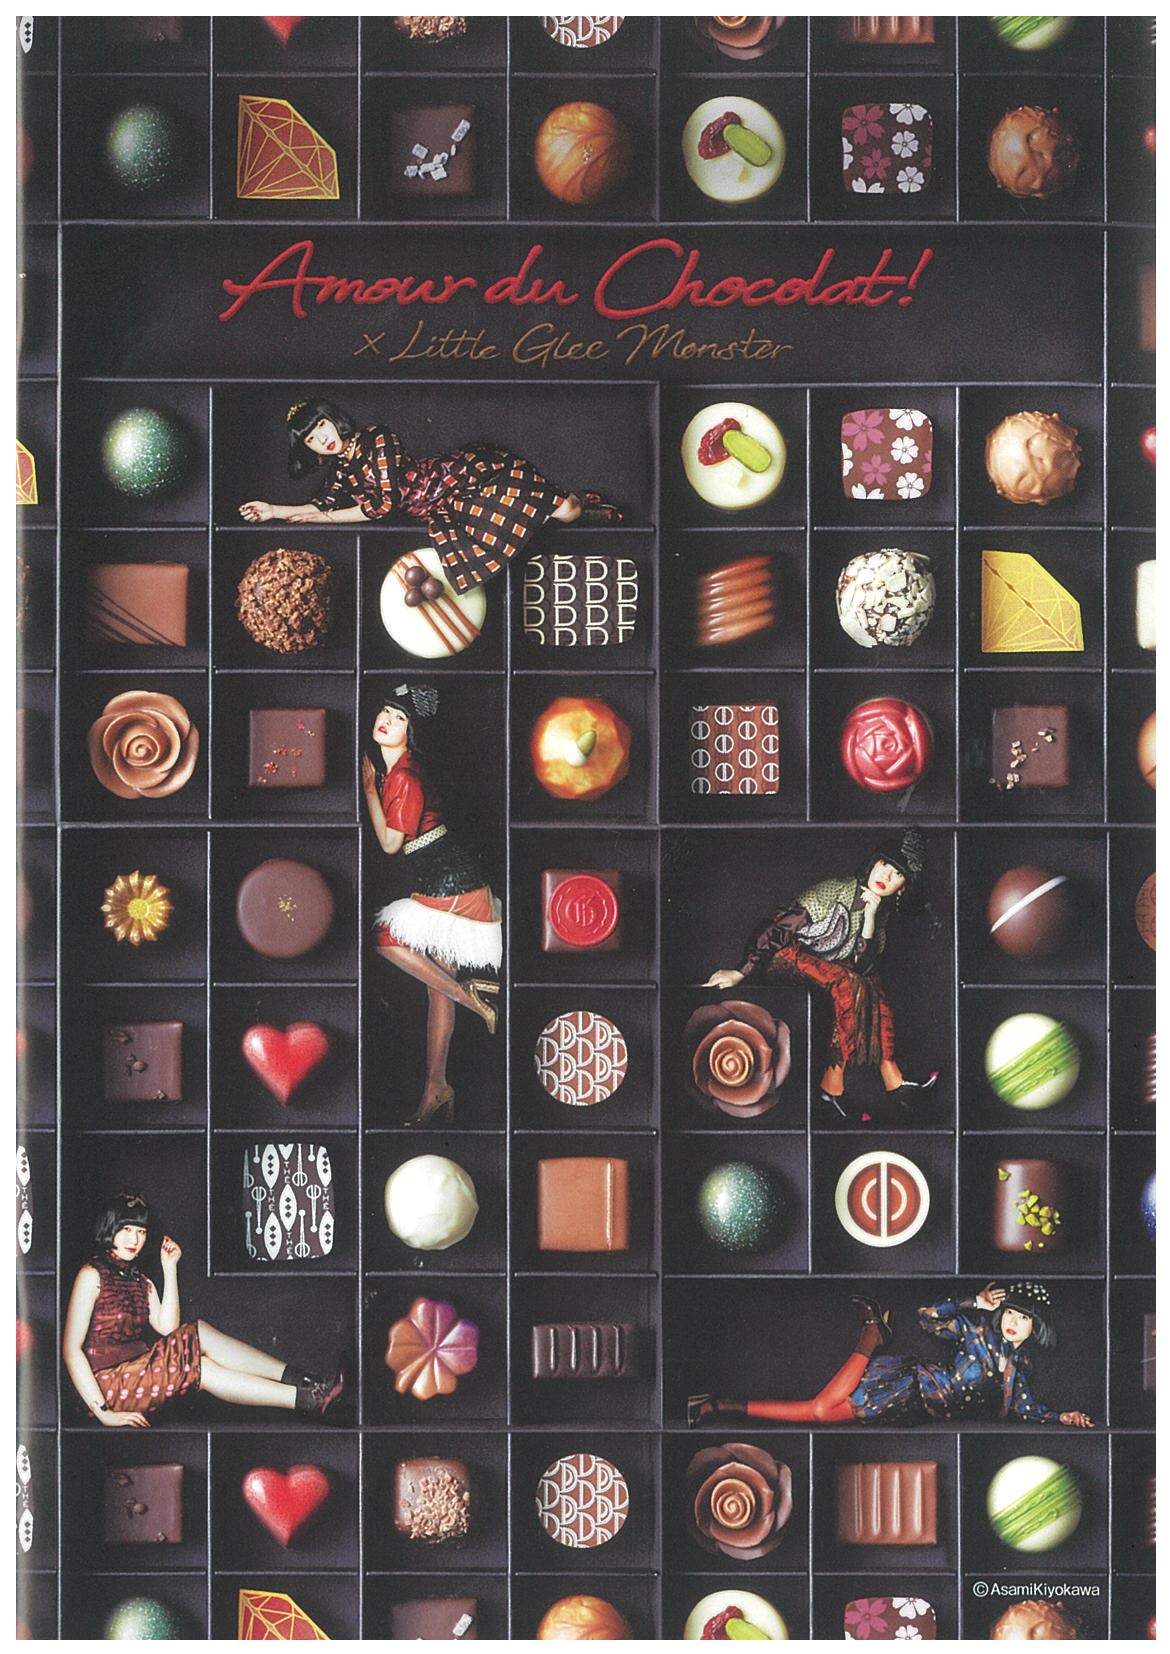 年に一度のチョコレートの祭典 遠鉄百貨店 アムール デュ ショコラ へ行って来ました Any エニィ